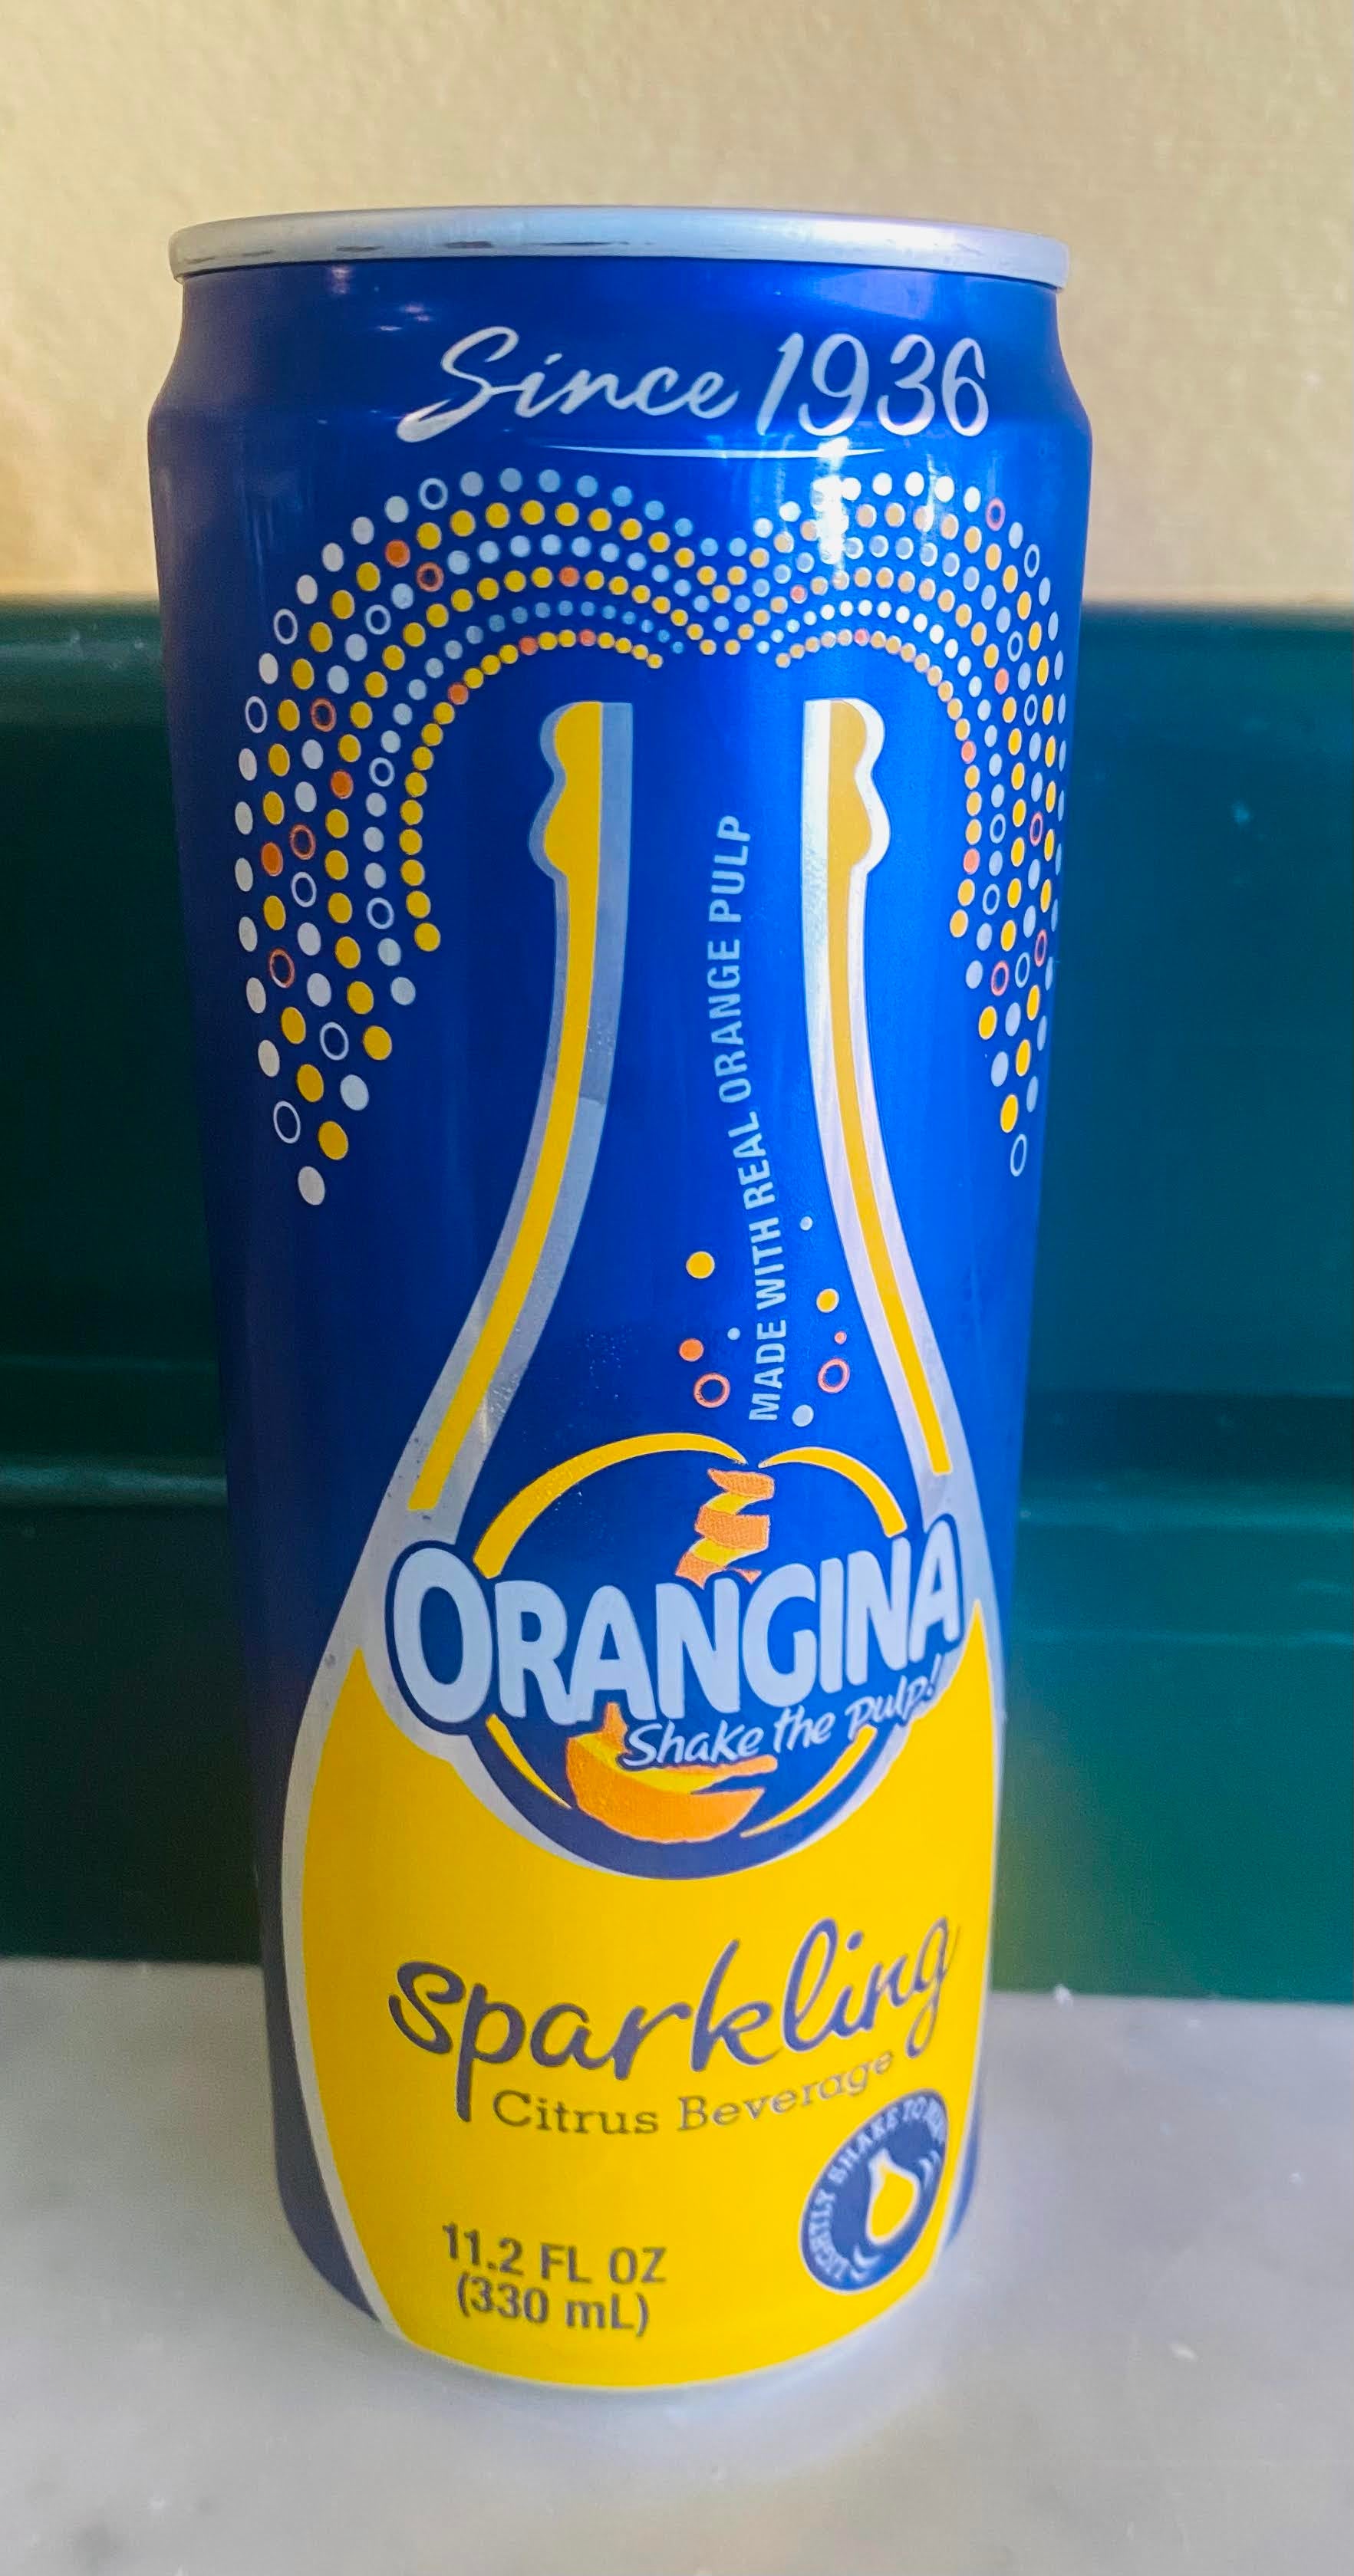 Orangina, Sparkling Citrus, Citrus Drink